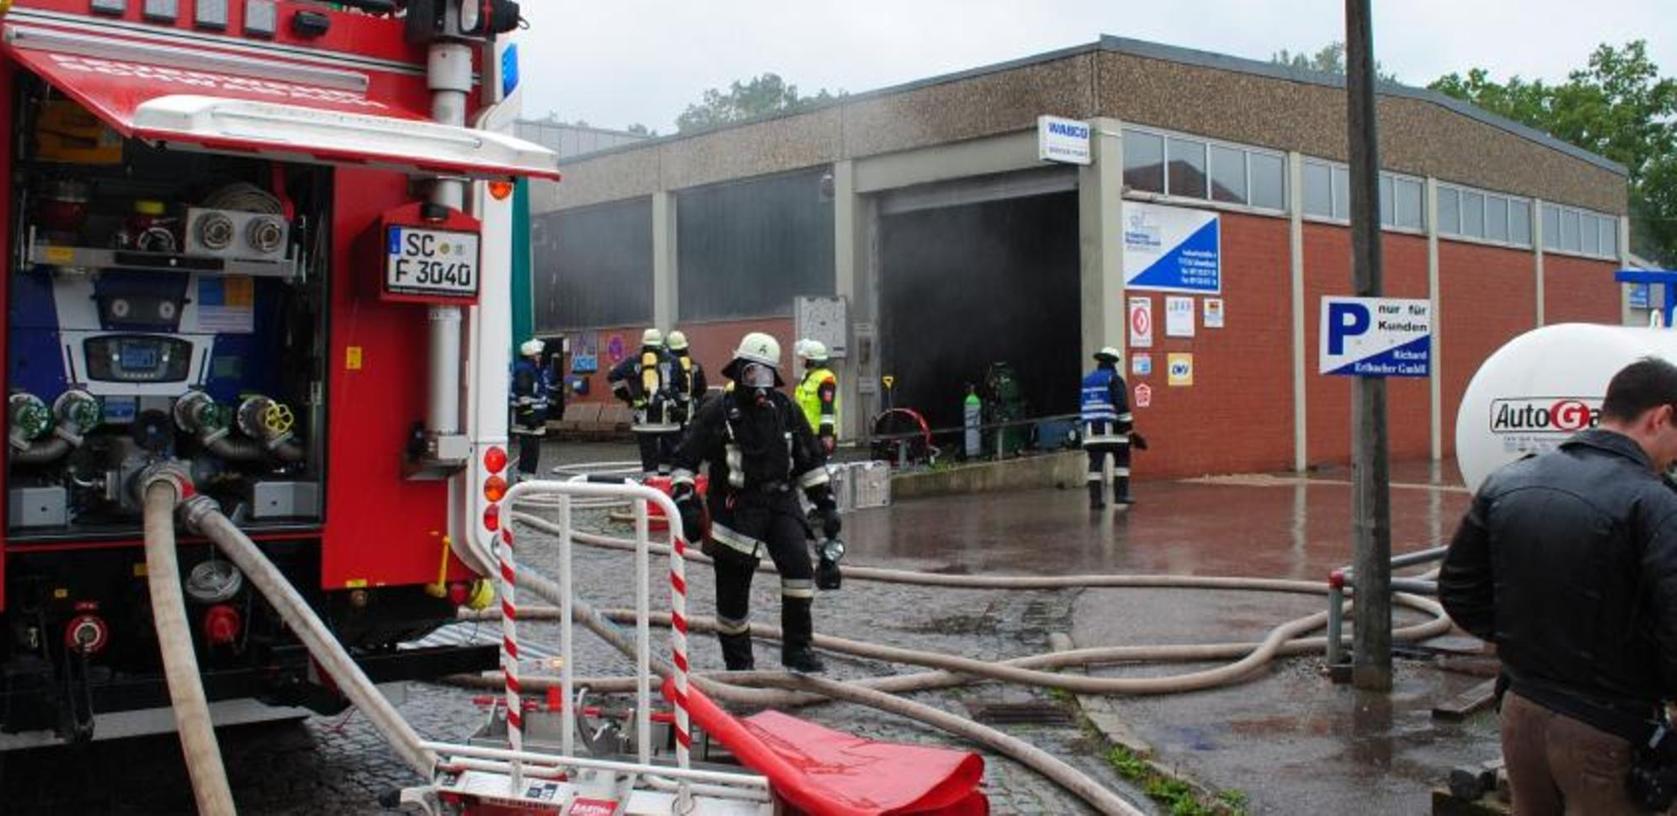 FFW Schwabach löschte brennendes Auto in einer Werkstatt